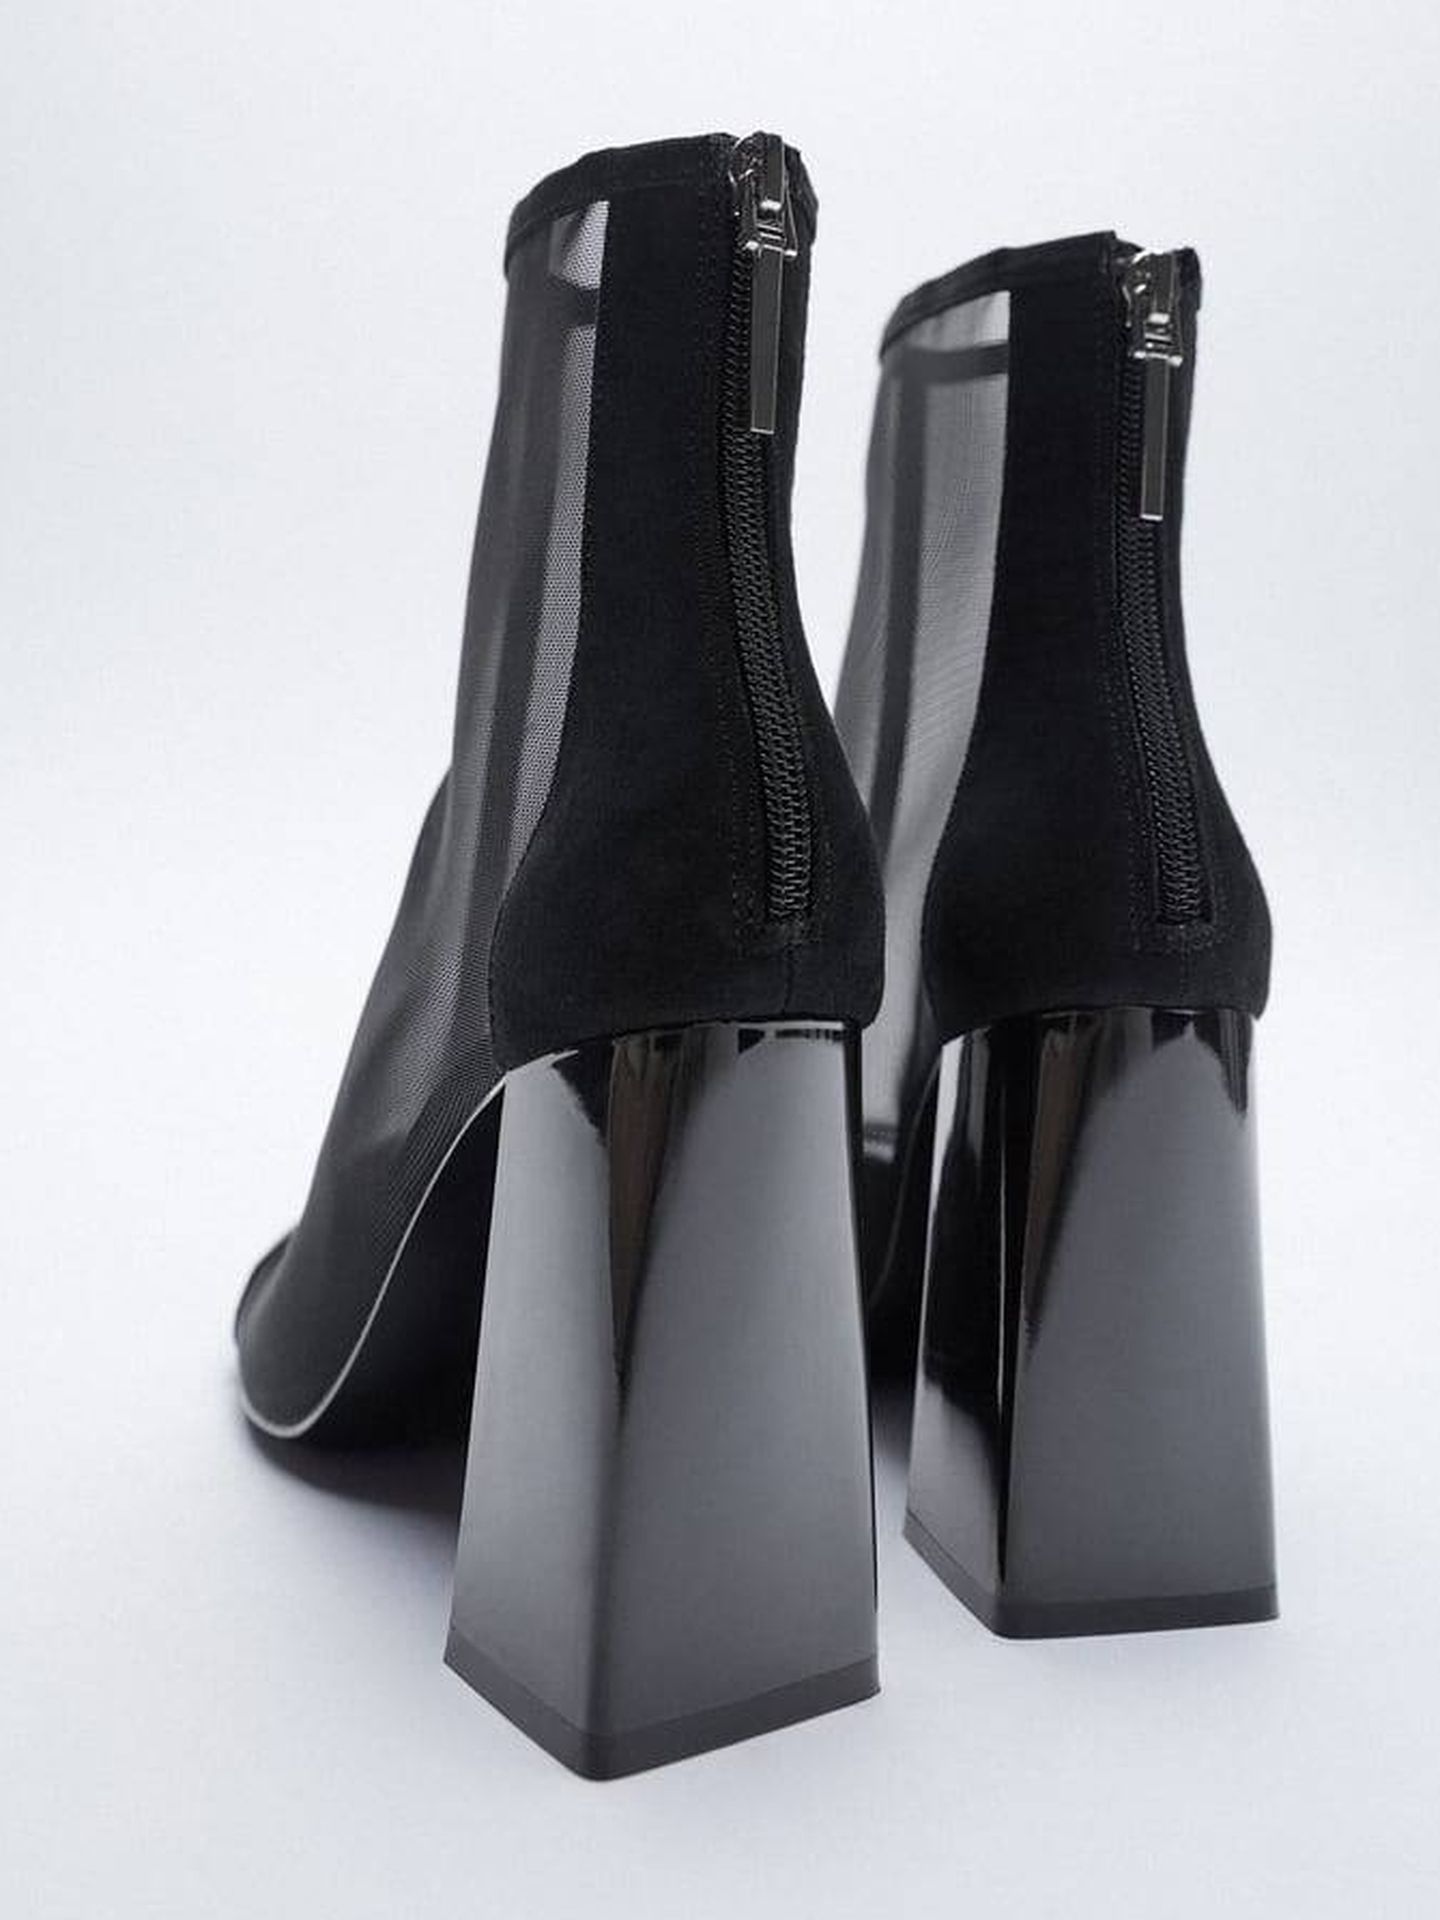 Botines negros de la nueva colección de Zara. (Cortesía)